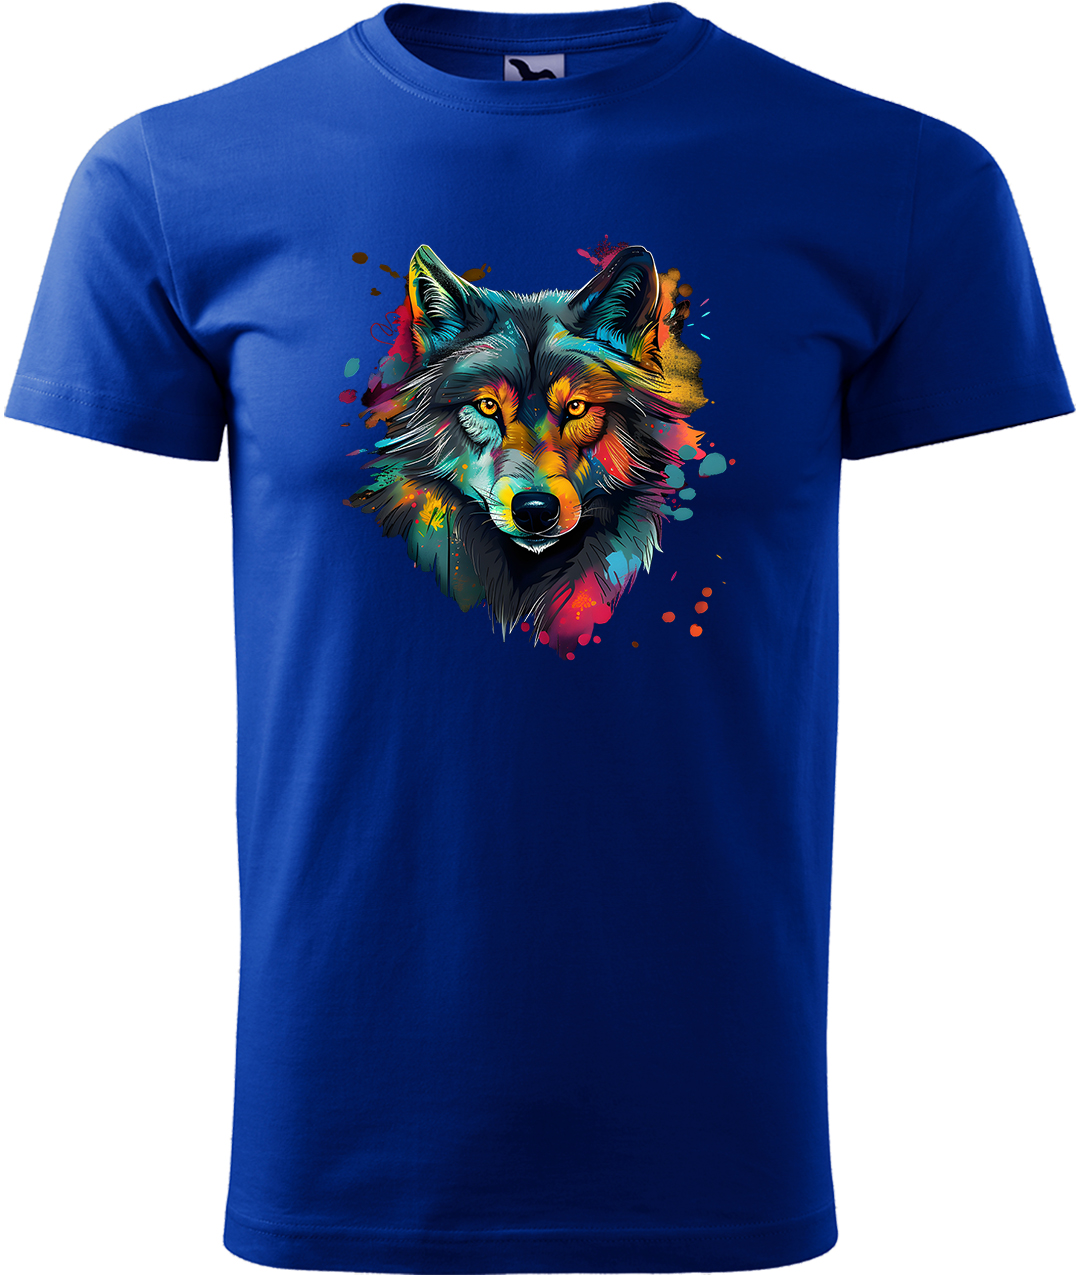 Pánské tričko s vlkem - Malovaný vlk Velikost: L, Barva: Královská modrá (05), Střih: pánský